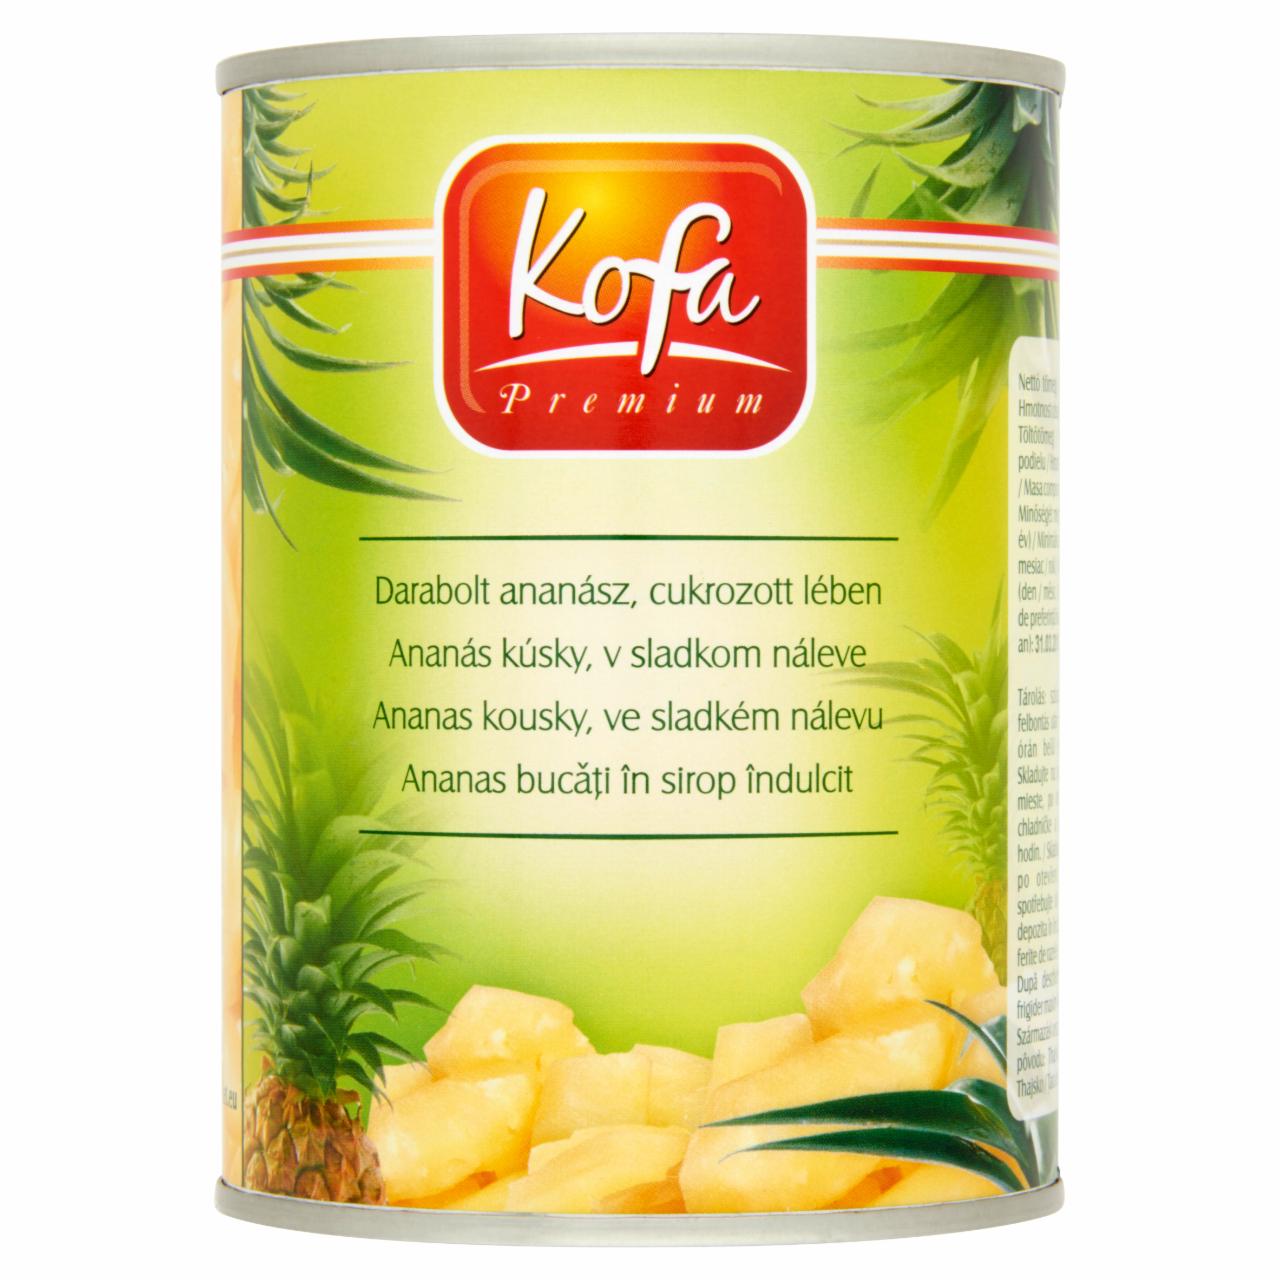 Képek - Kofa Premium darabolt ananász, cukrozott lében 565 g